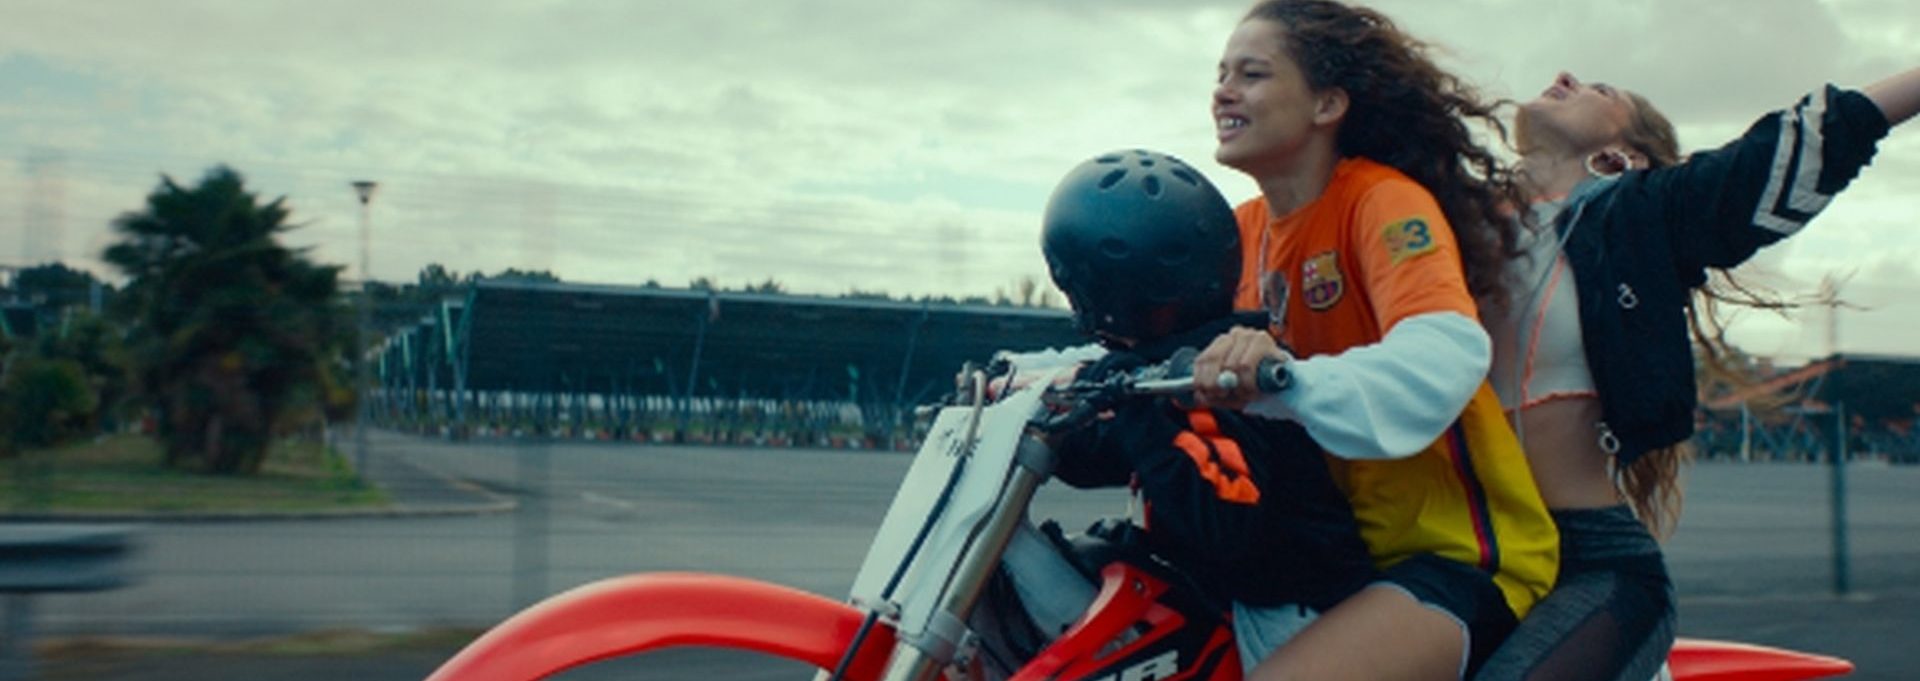 RODEO - Zwei Mädchen auf einem Motorrad - Szenenbild Trailer